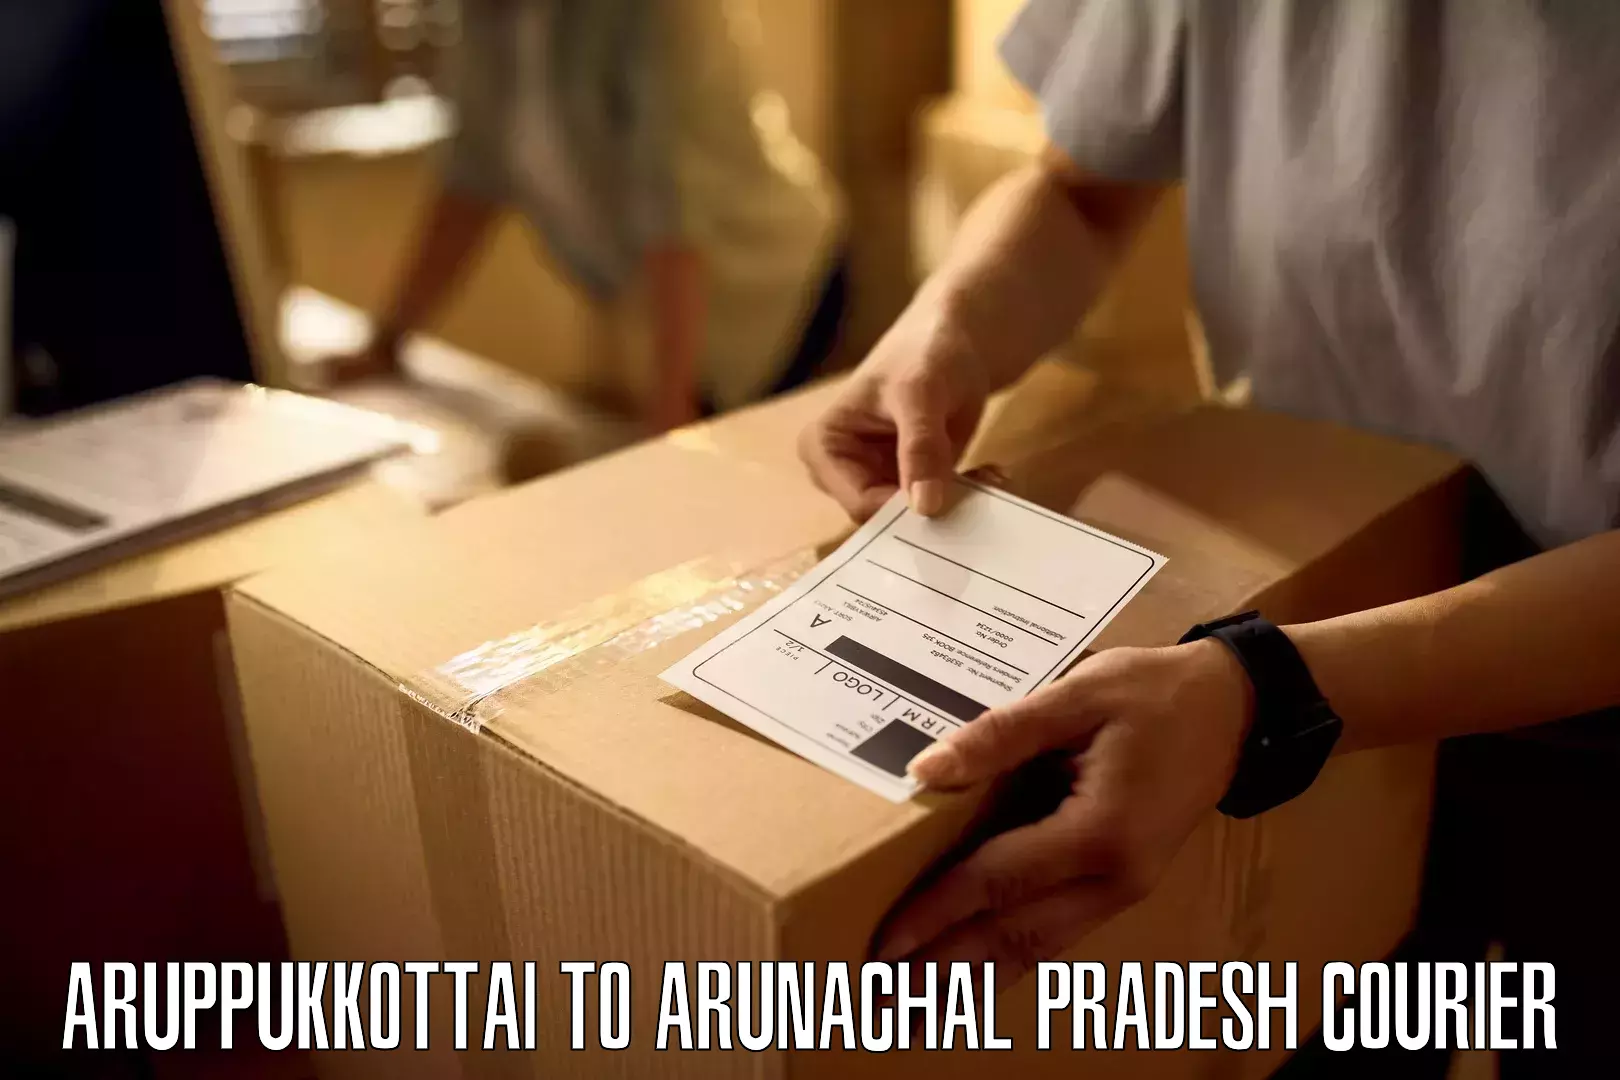 Reliable parcel services Aruppukkottai to Arunachal Pradesh